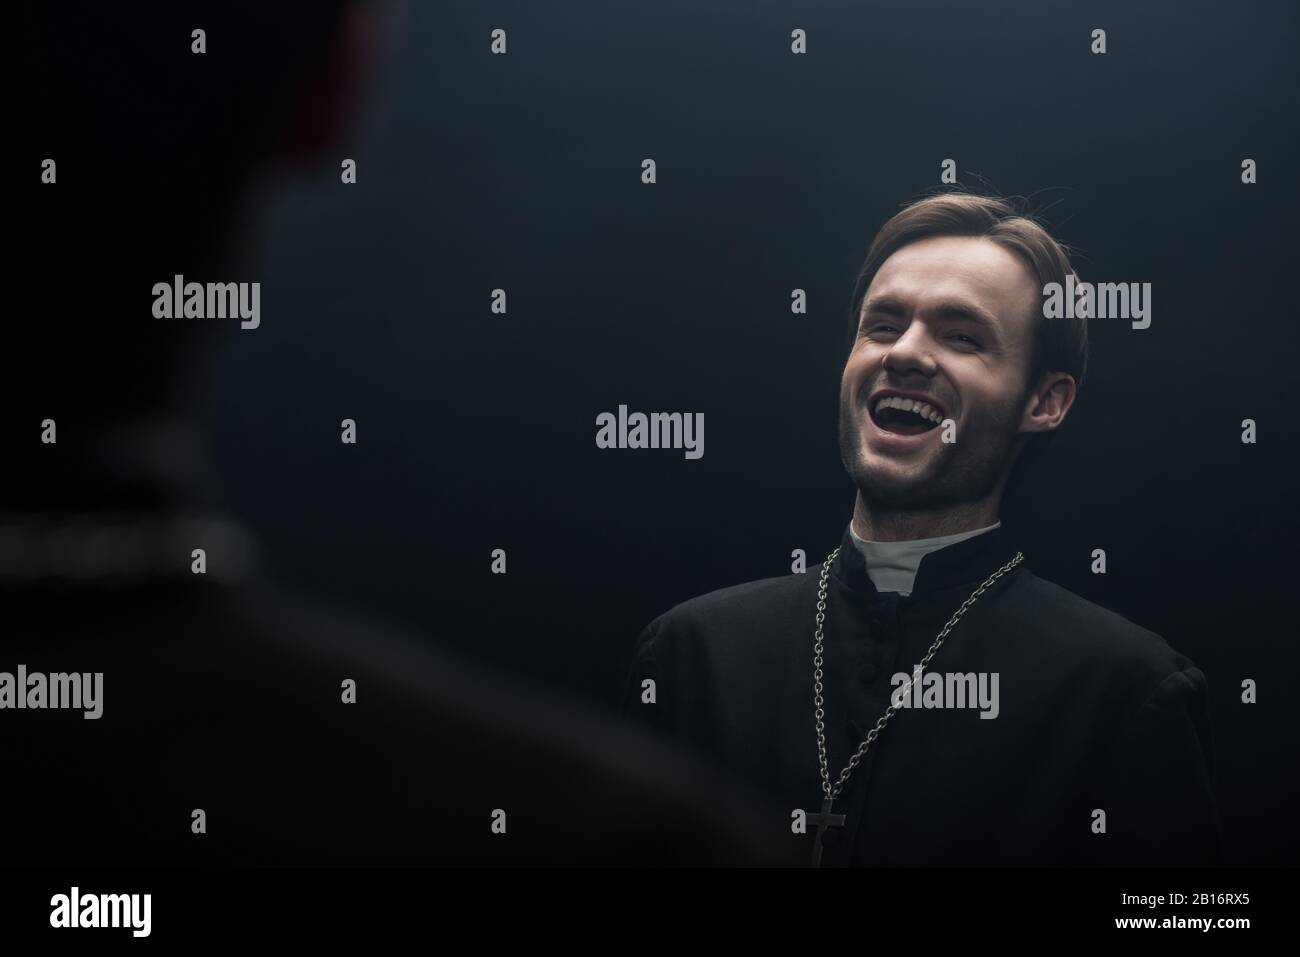 Der junge katholische Priester lacht sarkastisch, während er seine eigene Reflexion betrachtet, die auf Schwarz isoliert ist Stockfoto